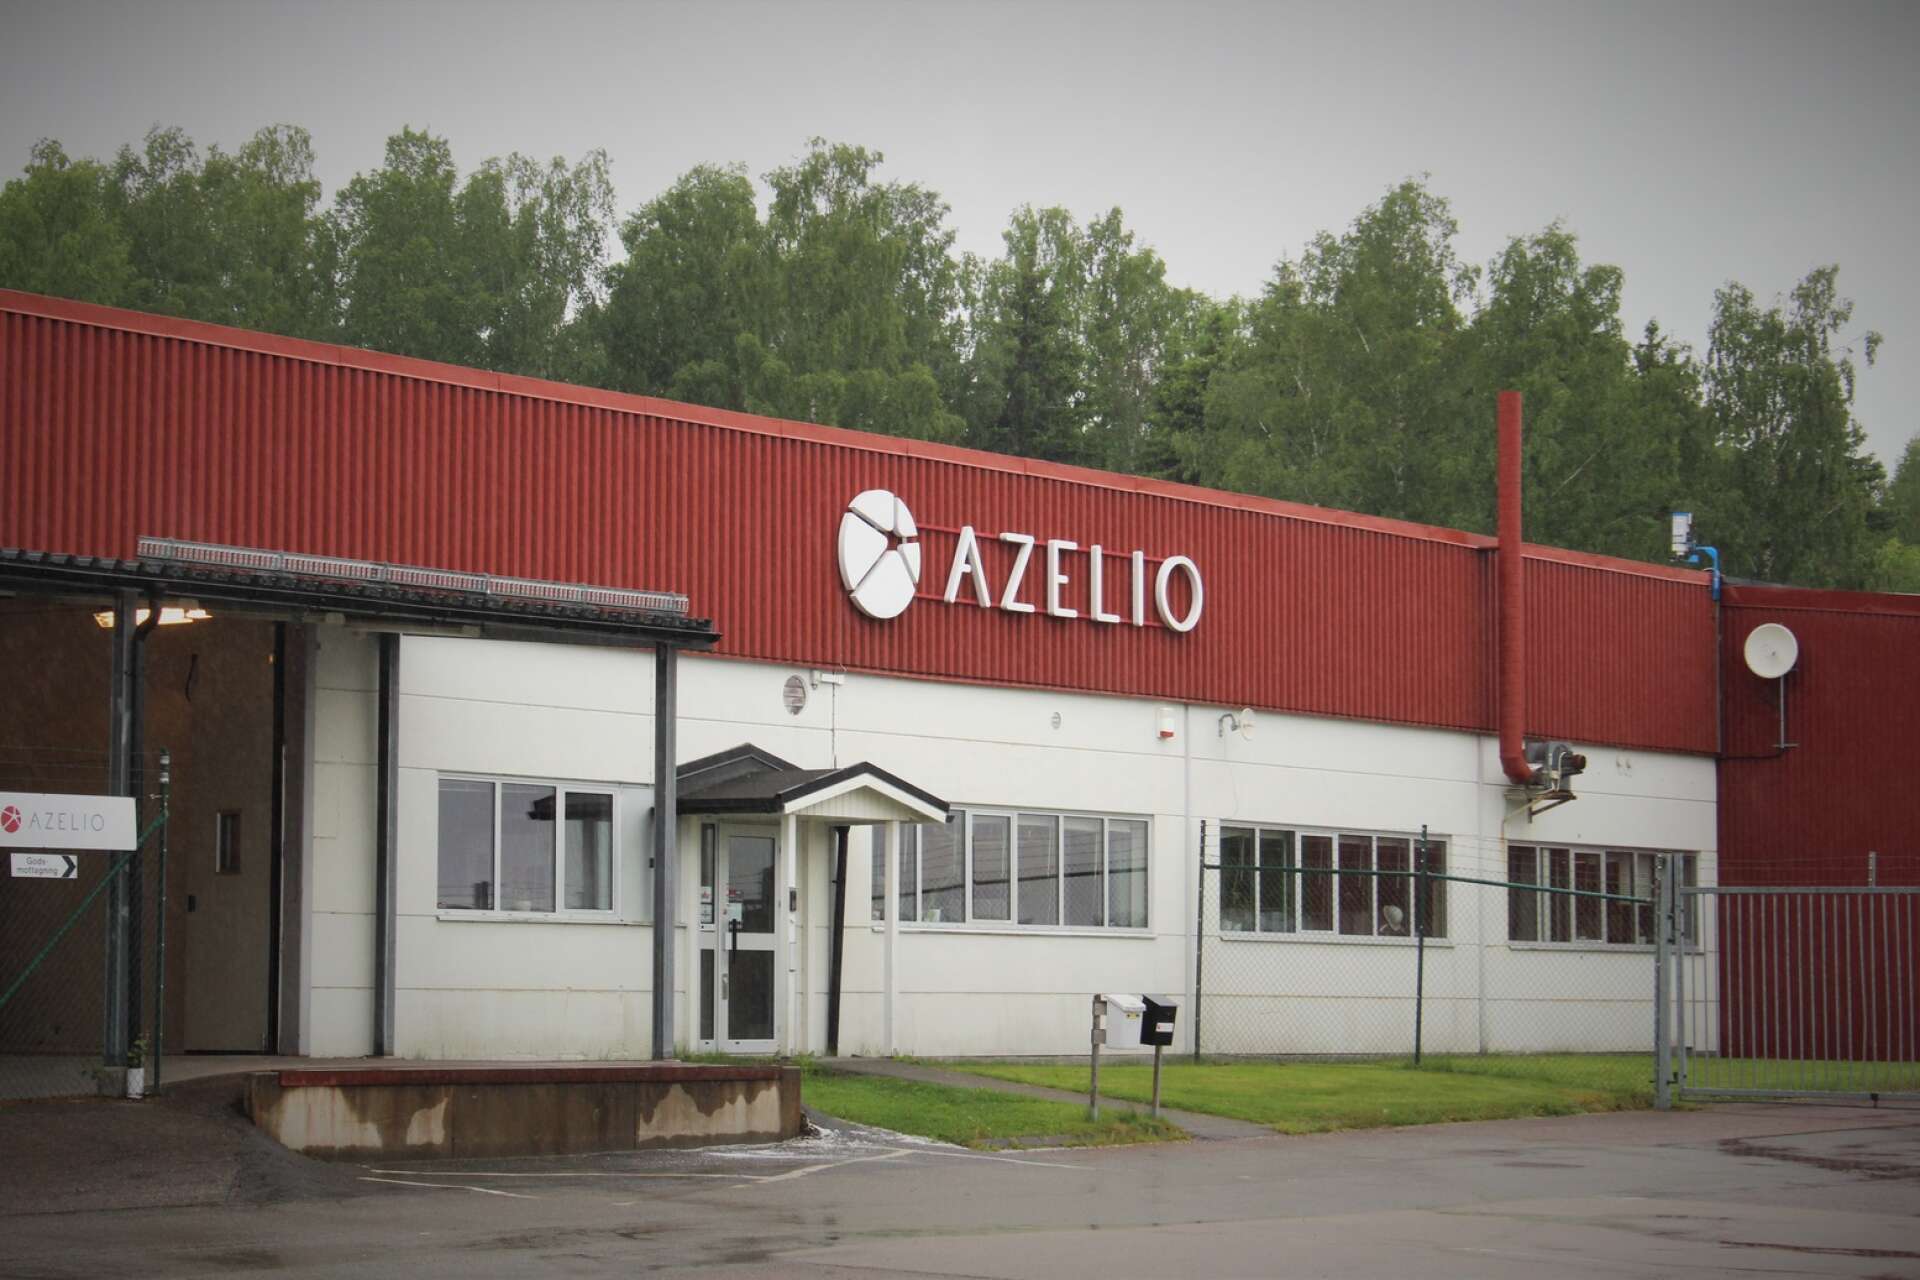 Azelio AB meddelade under onsdagen att Göteborgs tingsrätt bifaller företagets konkursansökan.